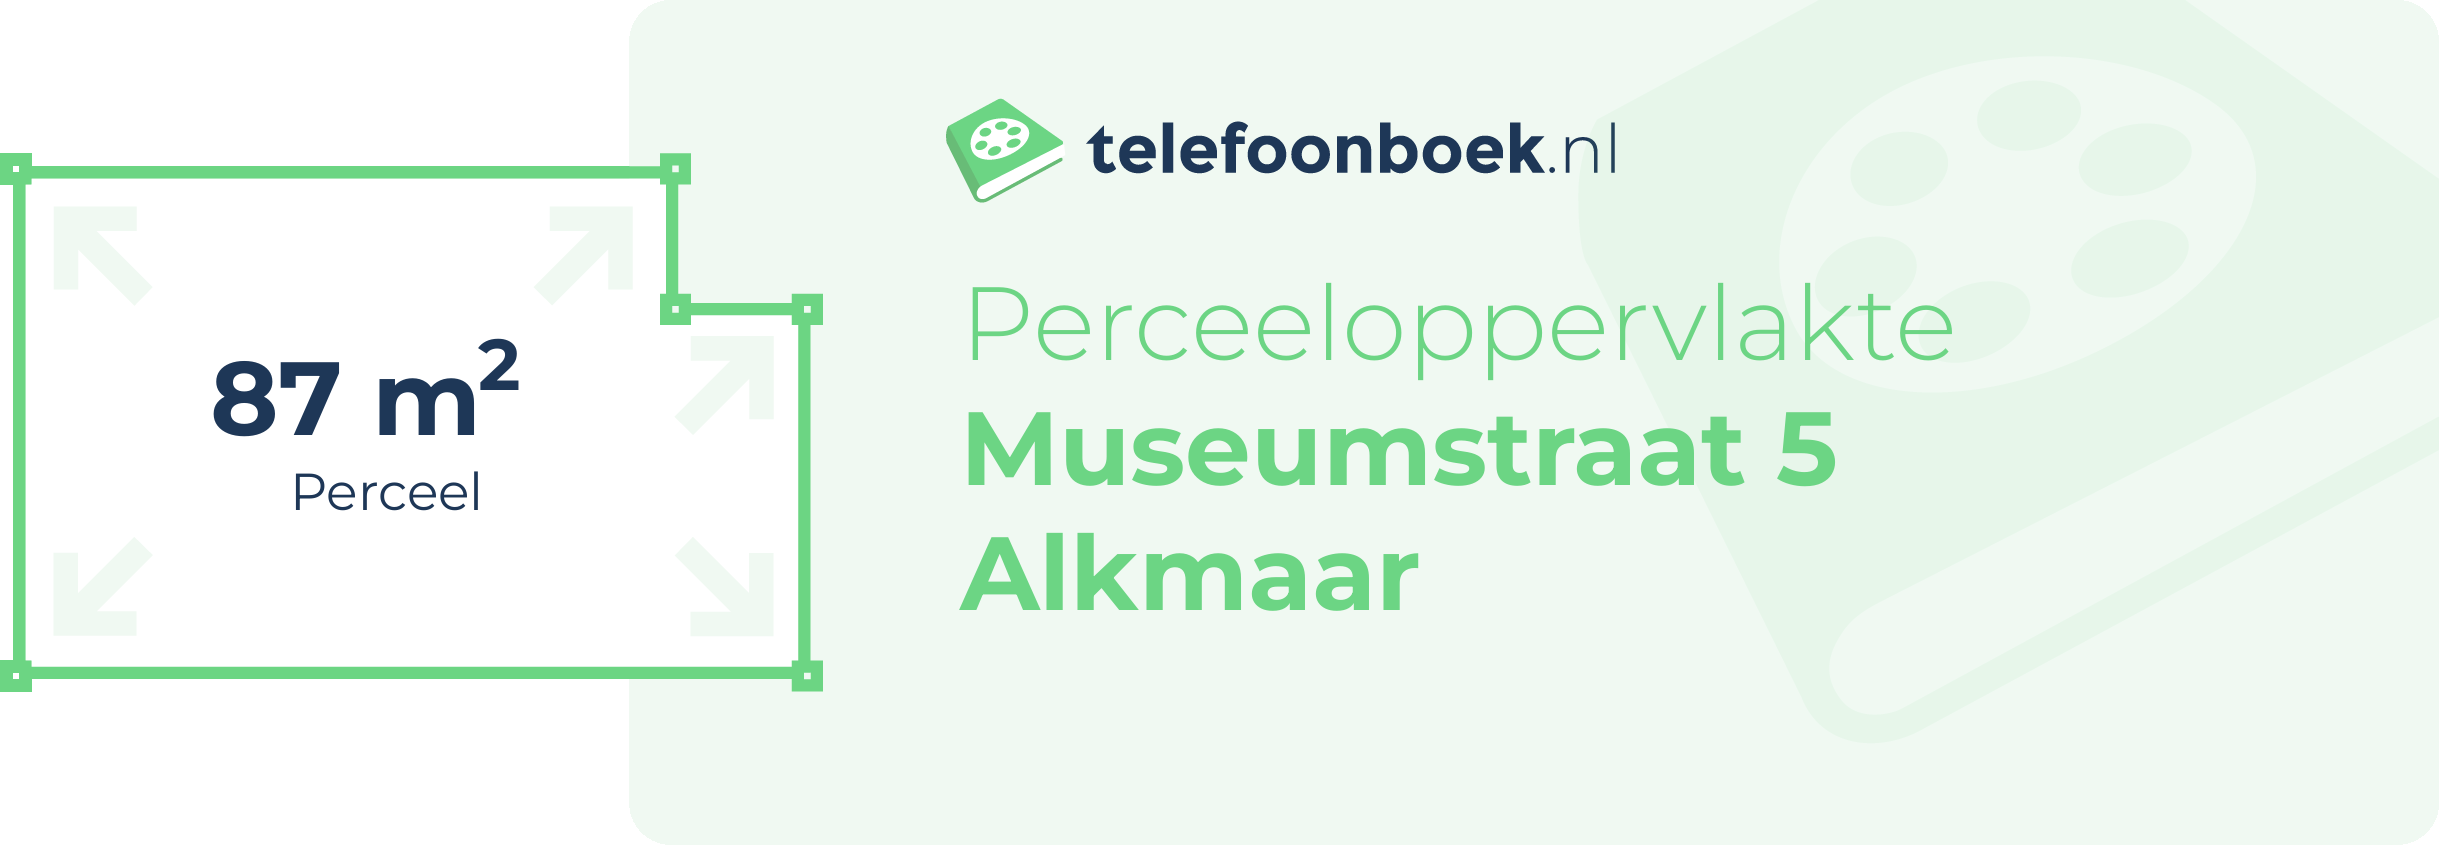 Perceeloppervlakte Museumstraat 5 Alkmaar